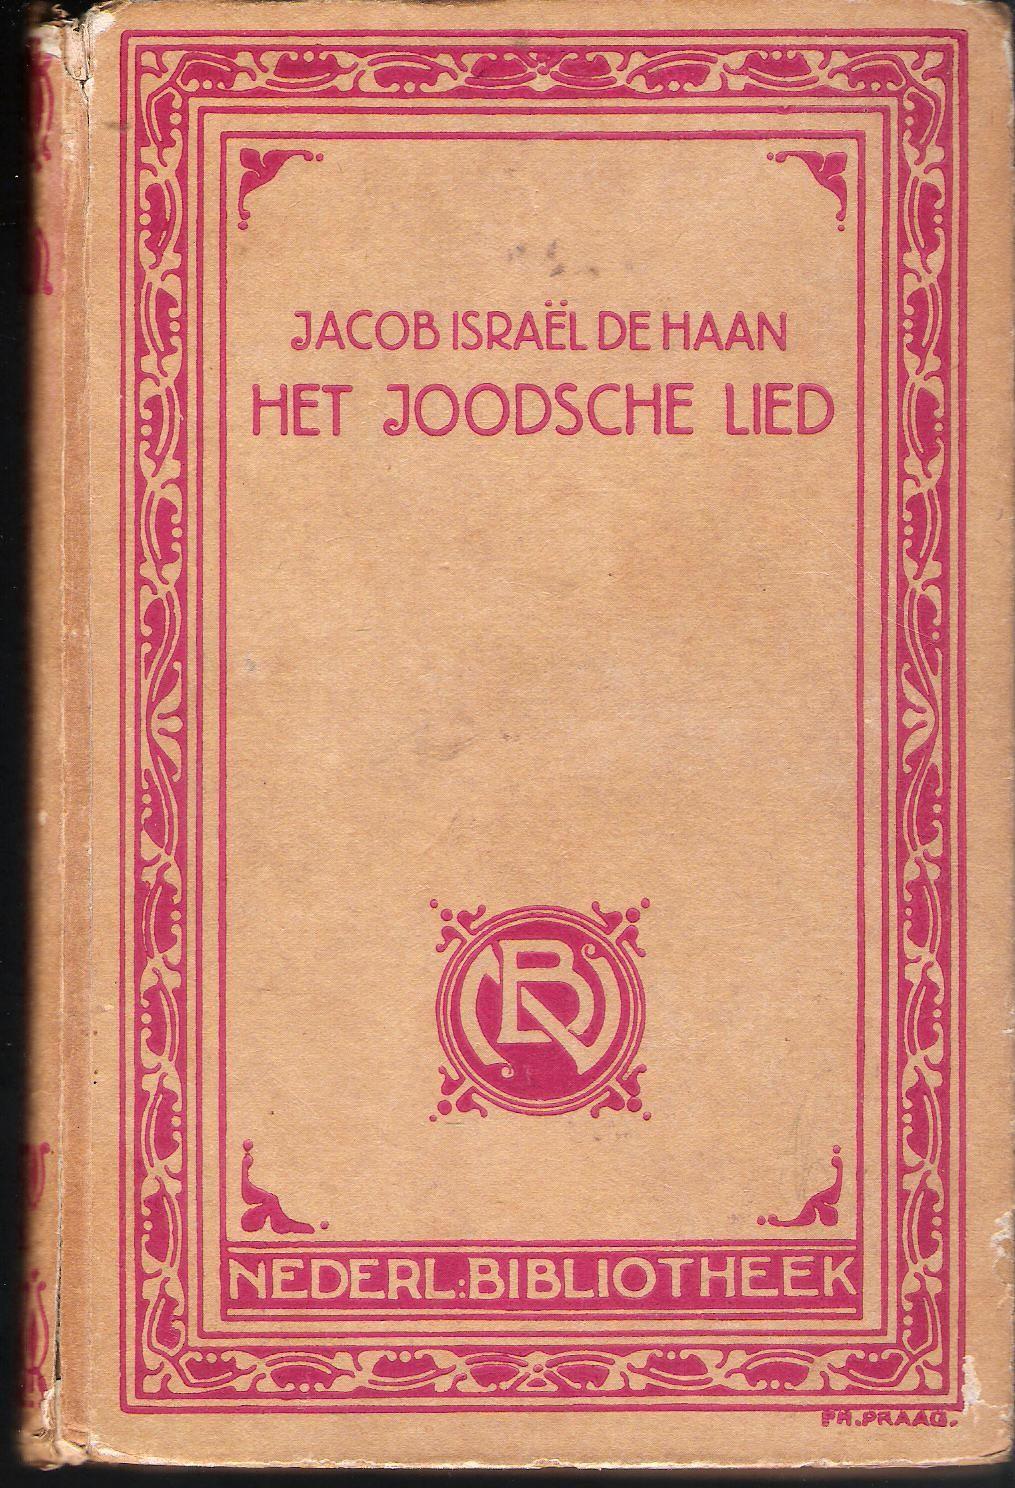 غلاف كتاب الأغنية اليهودية